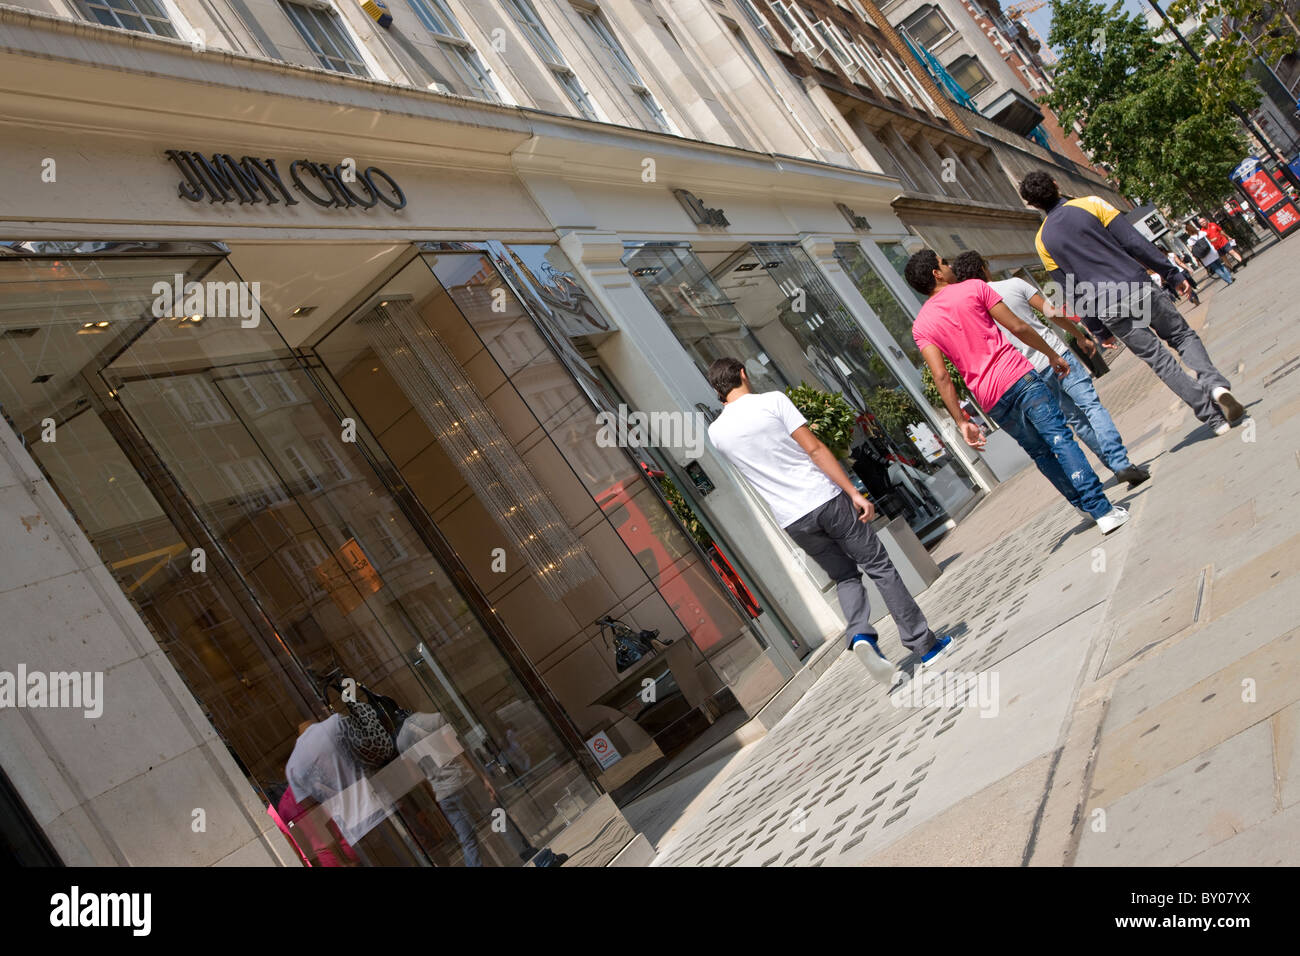 Jimmy Choo shop on Sloane Street in Knightsbridge Stock Photo - Alamy